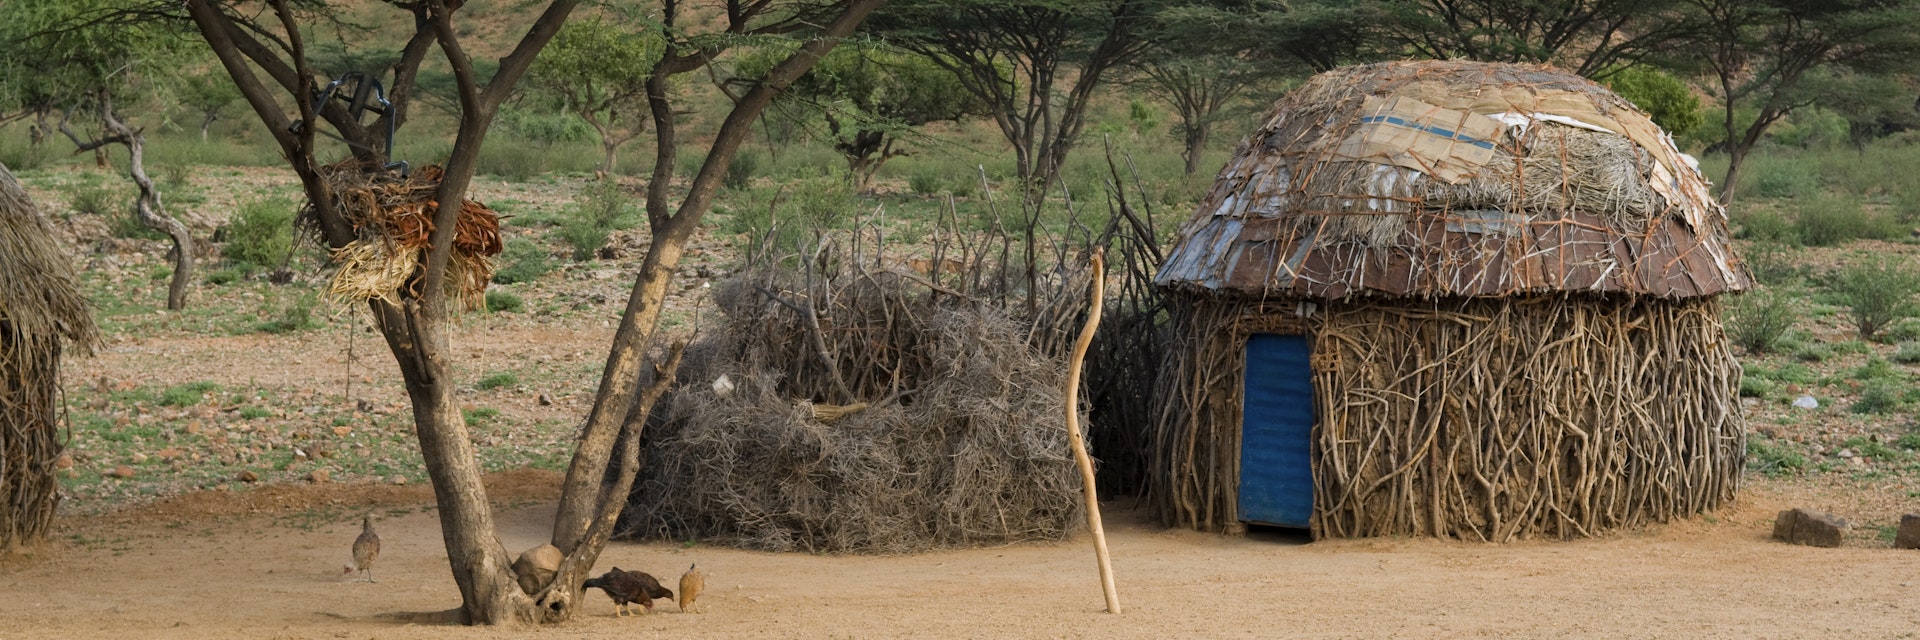 Turkana homestead, Kenya